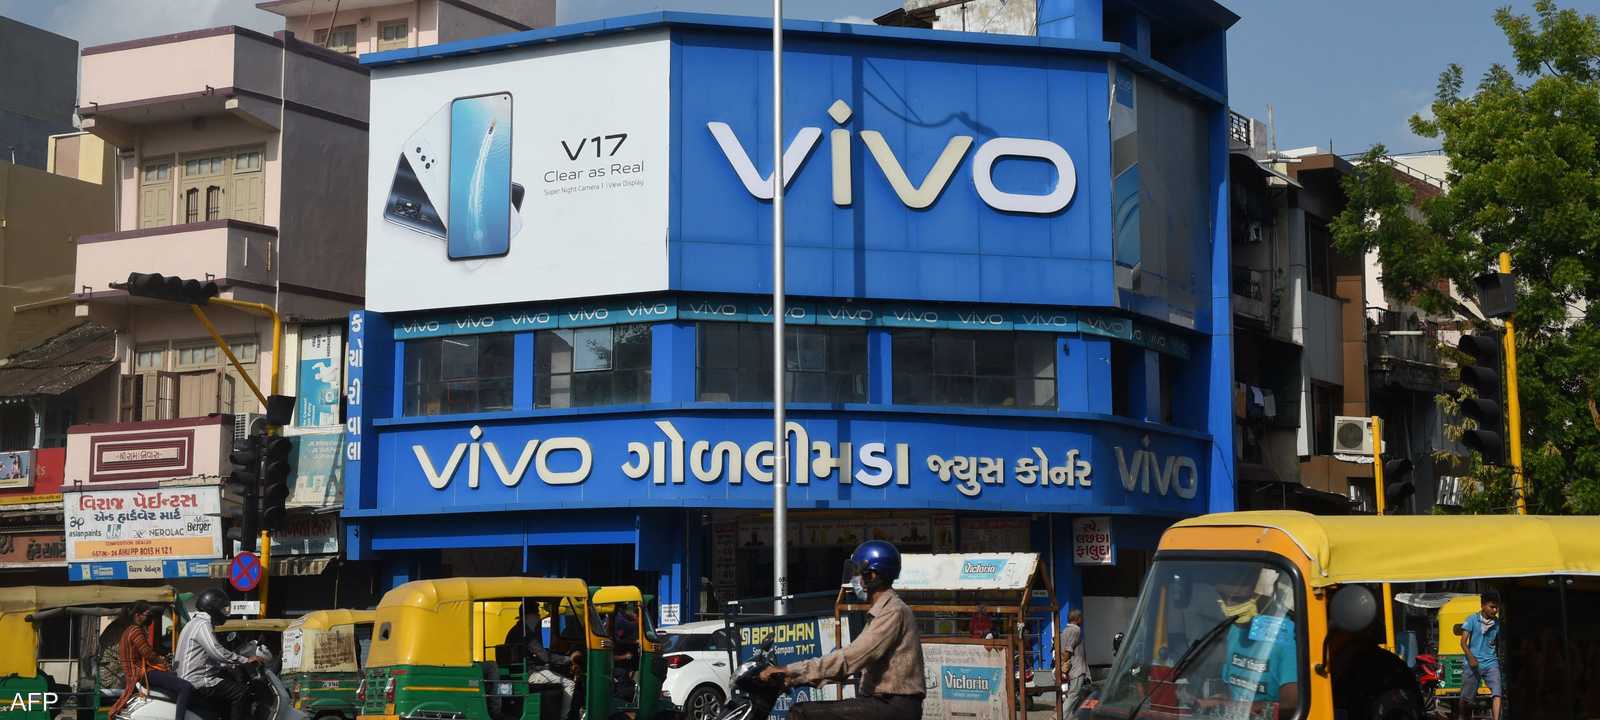 متجر لشركة "فيفو" في الهند